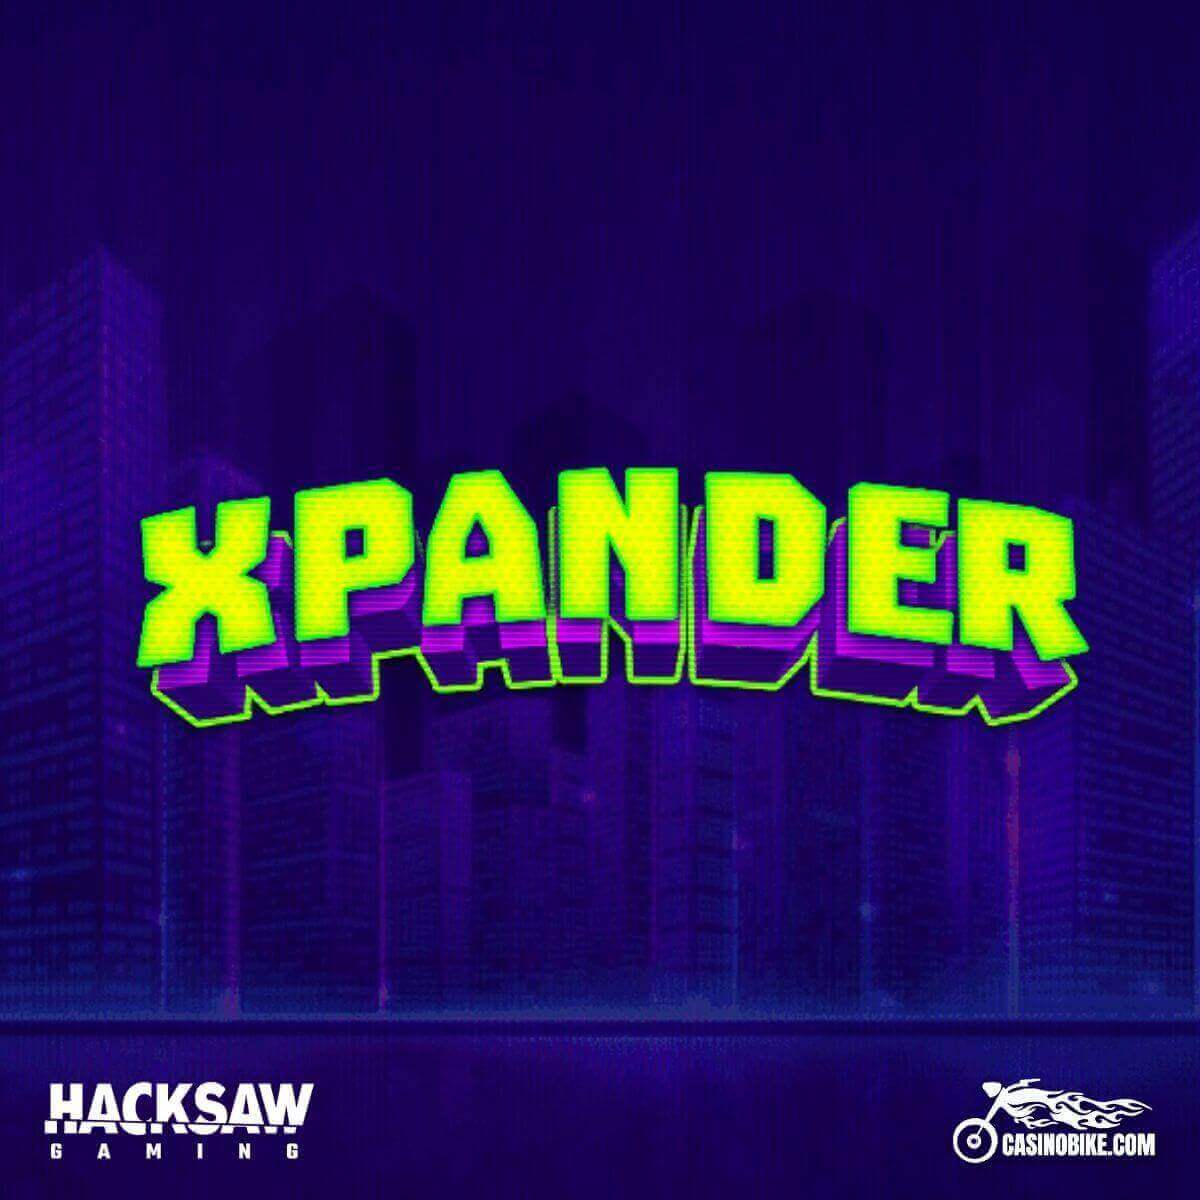 Xpander Slot by Hacksaw Gaming